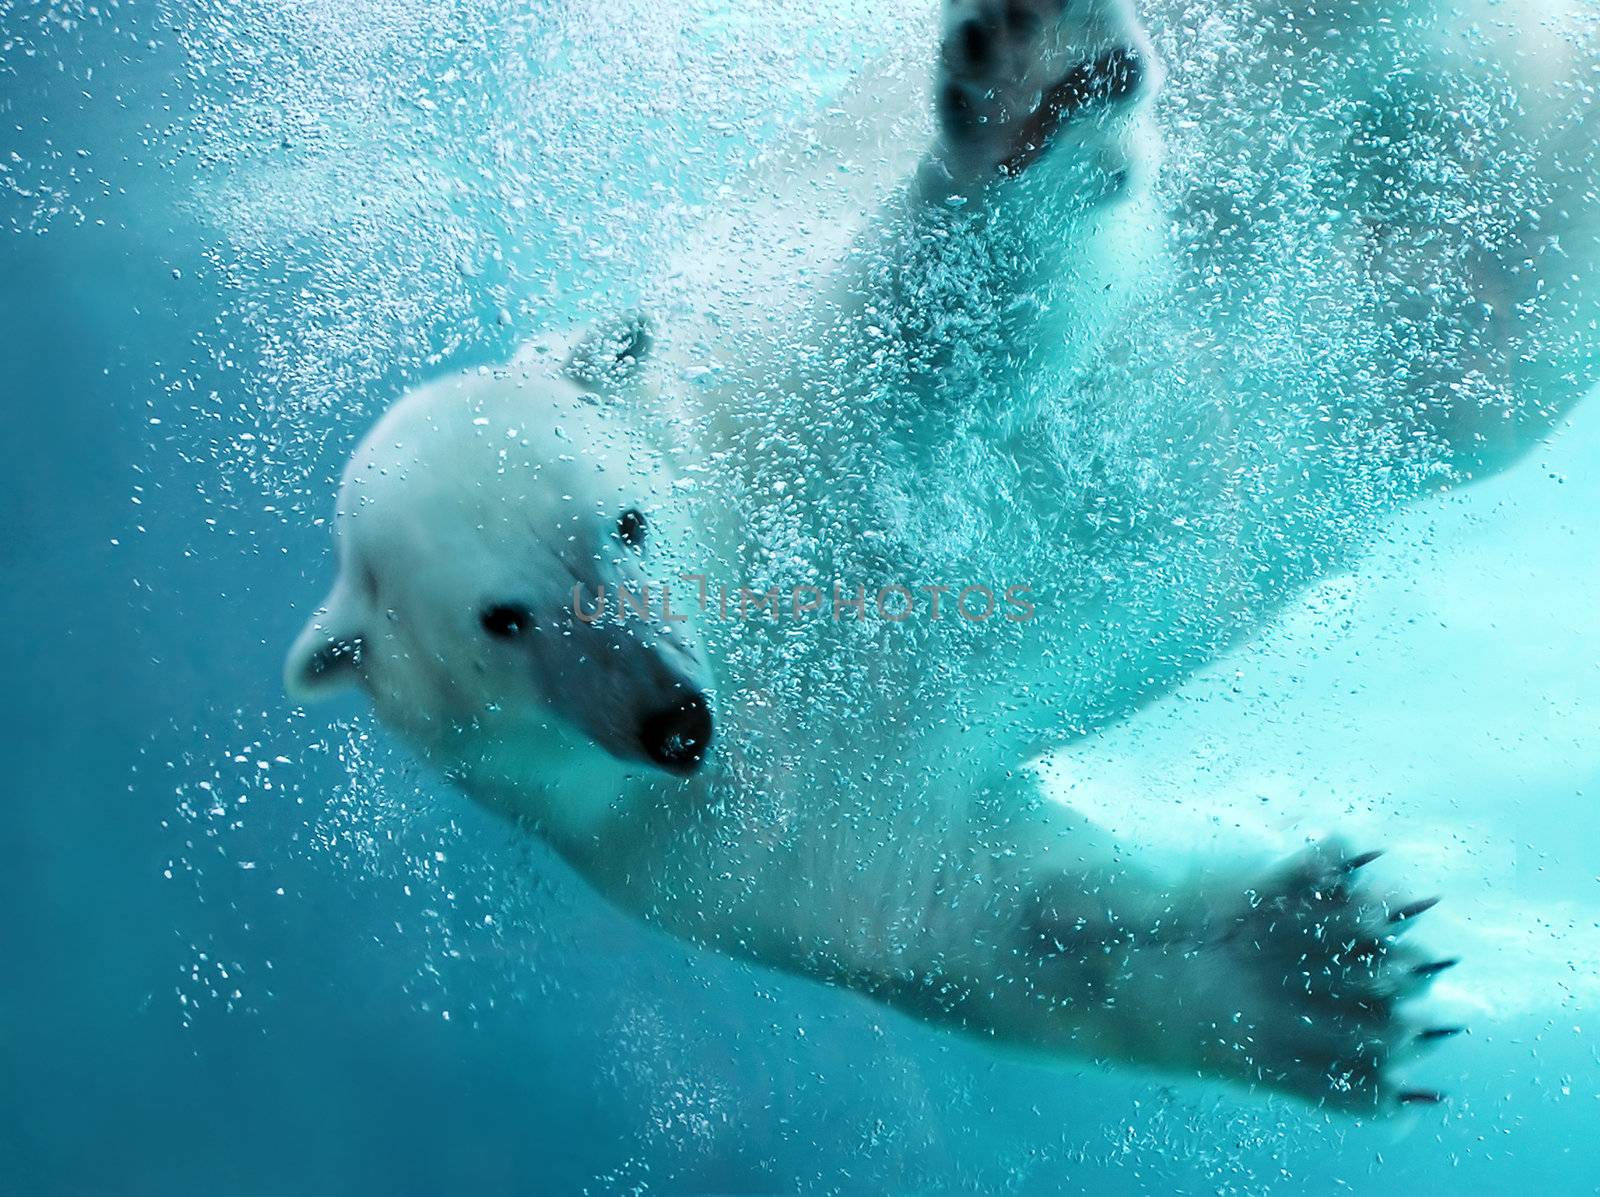 Polar bear underwater attack by Mirage3